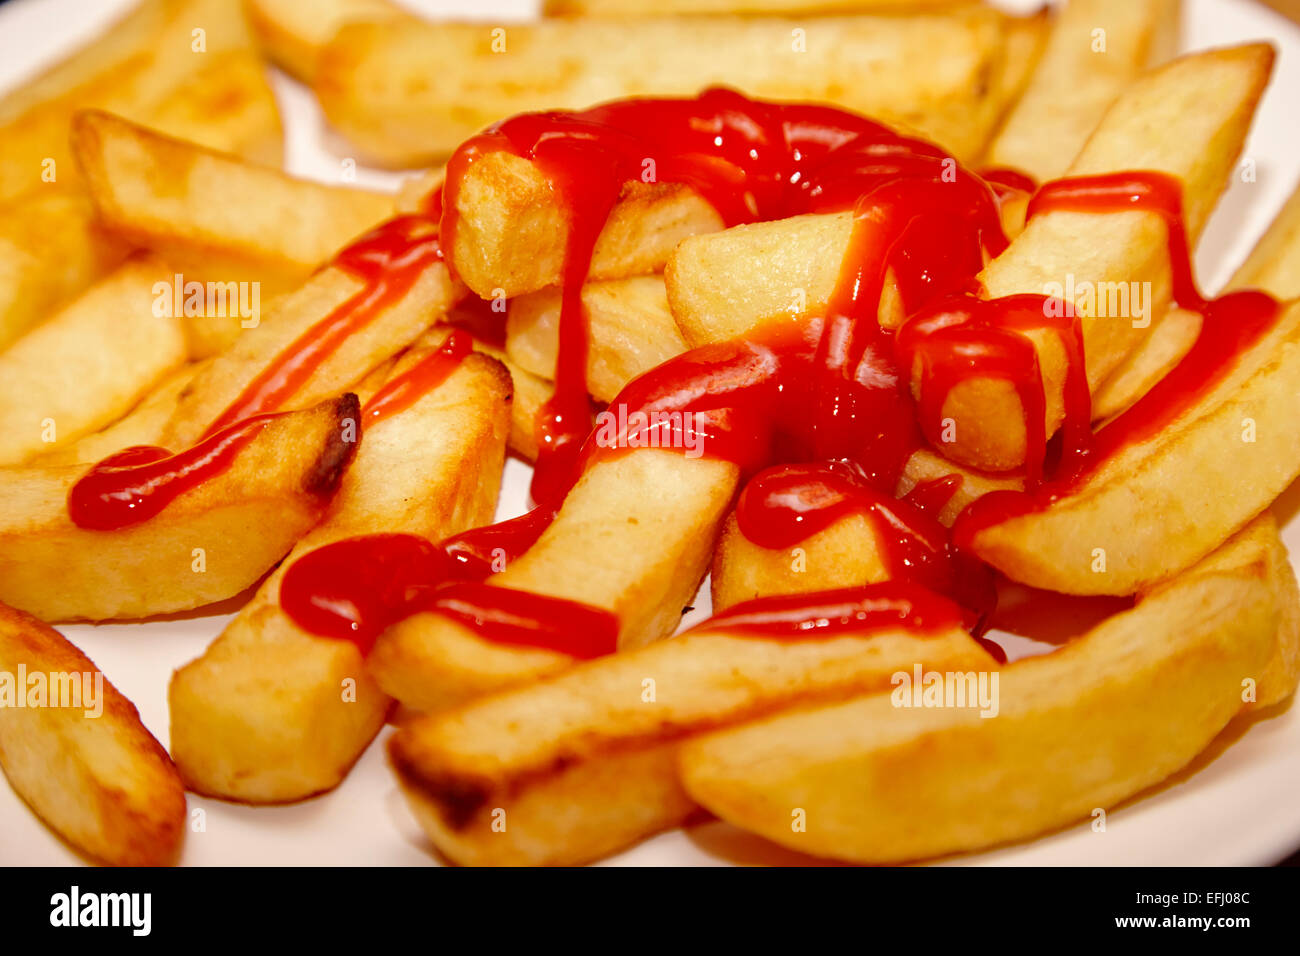 Assiette de frites au four cuit recouvert de ketchup Banque D'Images